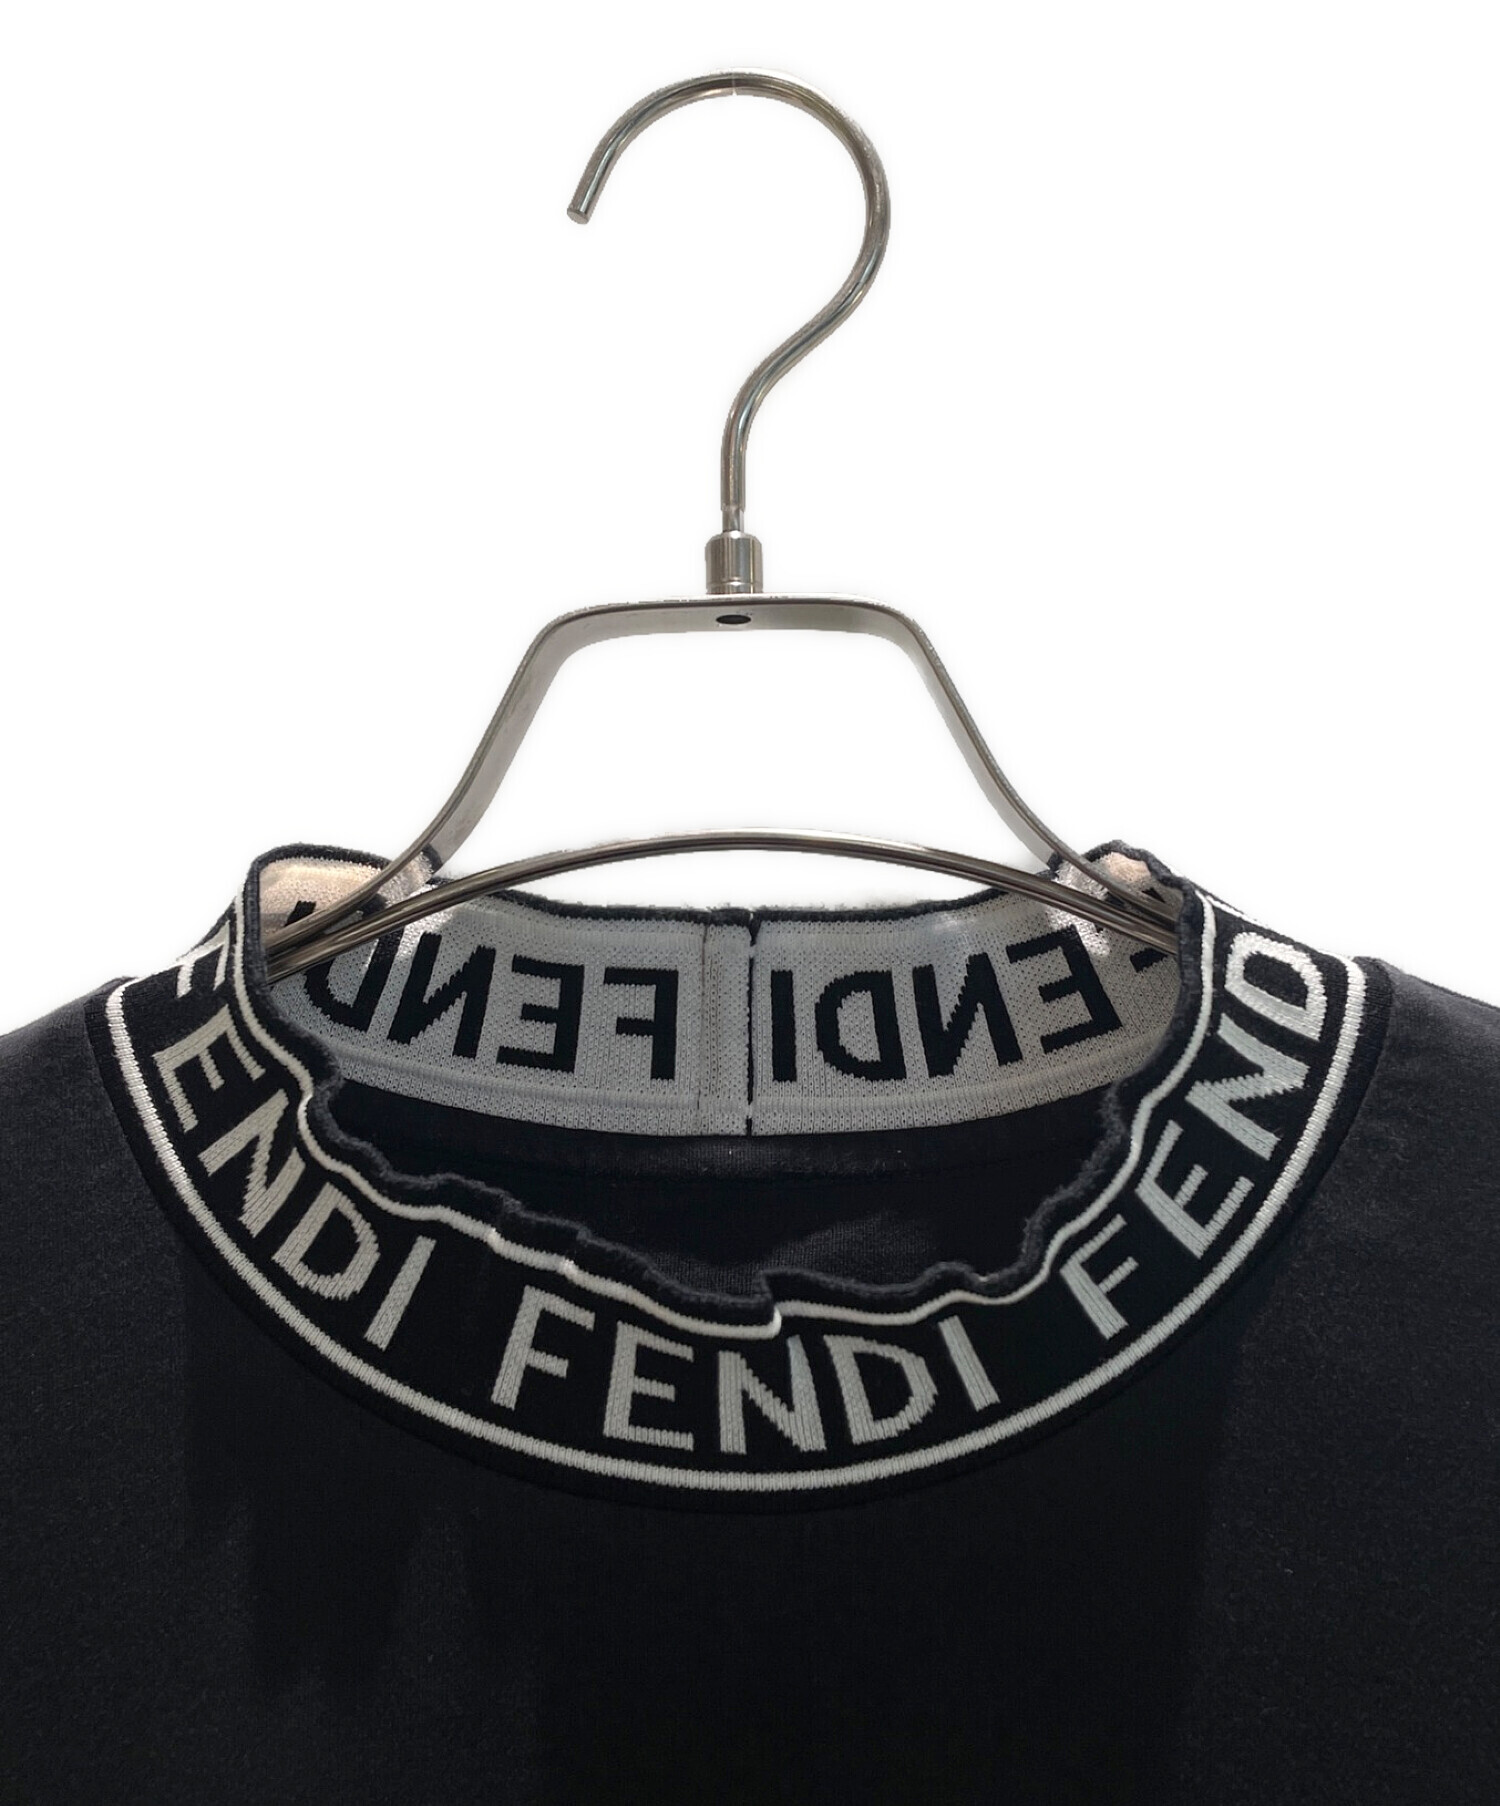 FENDI (フェンディ) ズッカ柄ハイネックカットソー ブラック サイズ:M